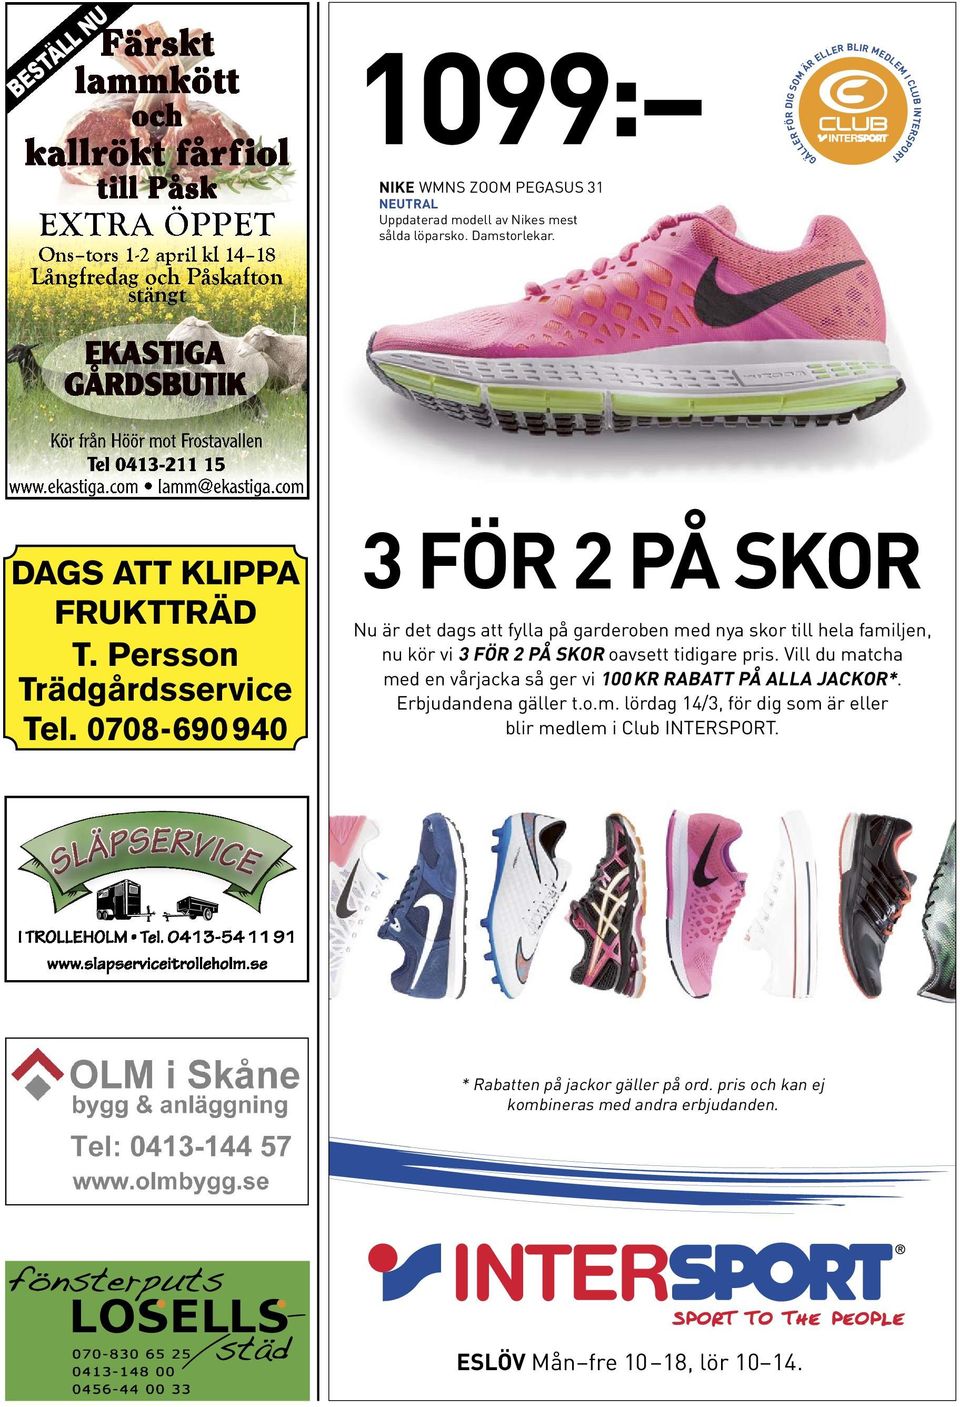 Persson Trädgårdsservice Tel. 0708-690 940 ÄPSER 3 FÖR 2 PÅ SKOR Nu är det dags att fylla på garderoben med nya skor till hela familjen, nu kör vi 3 FÖR 2 PÅ SKOR oavsett tidigare pris.